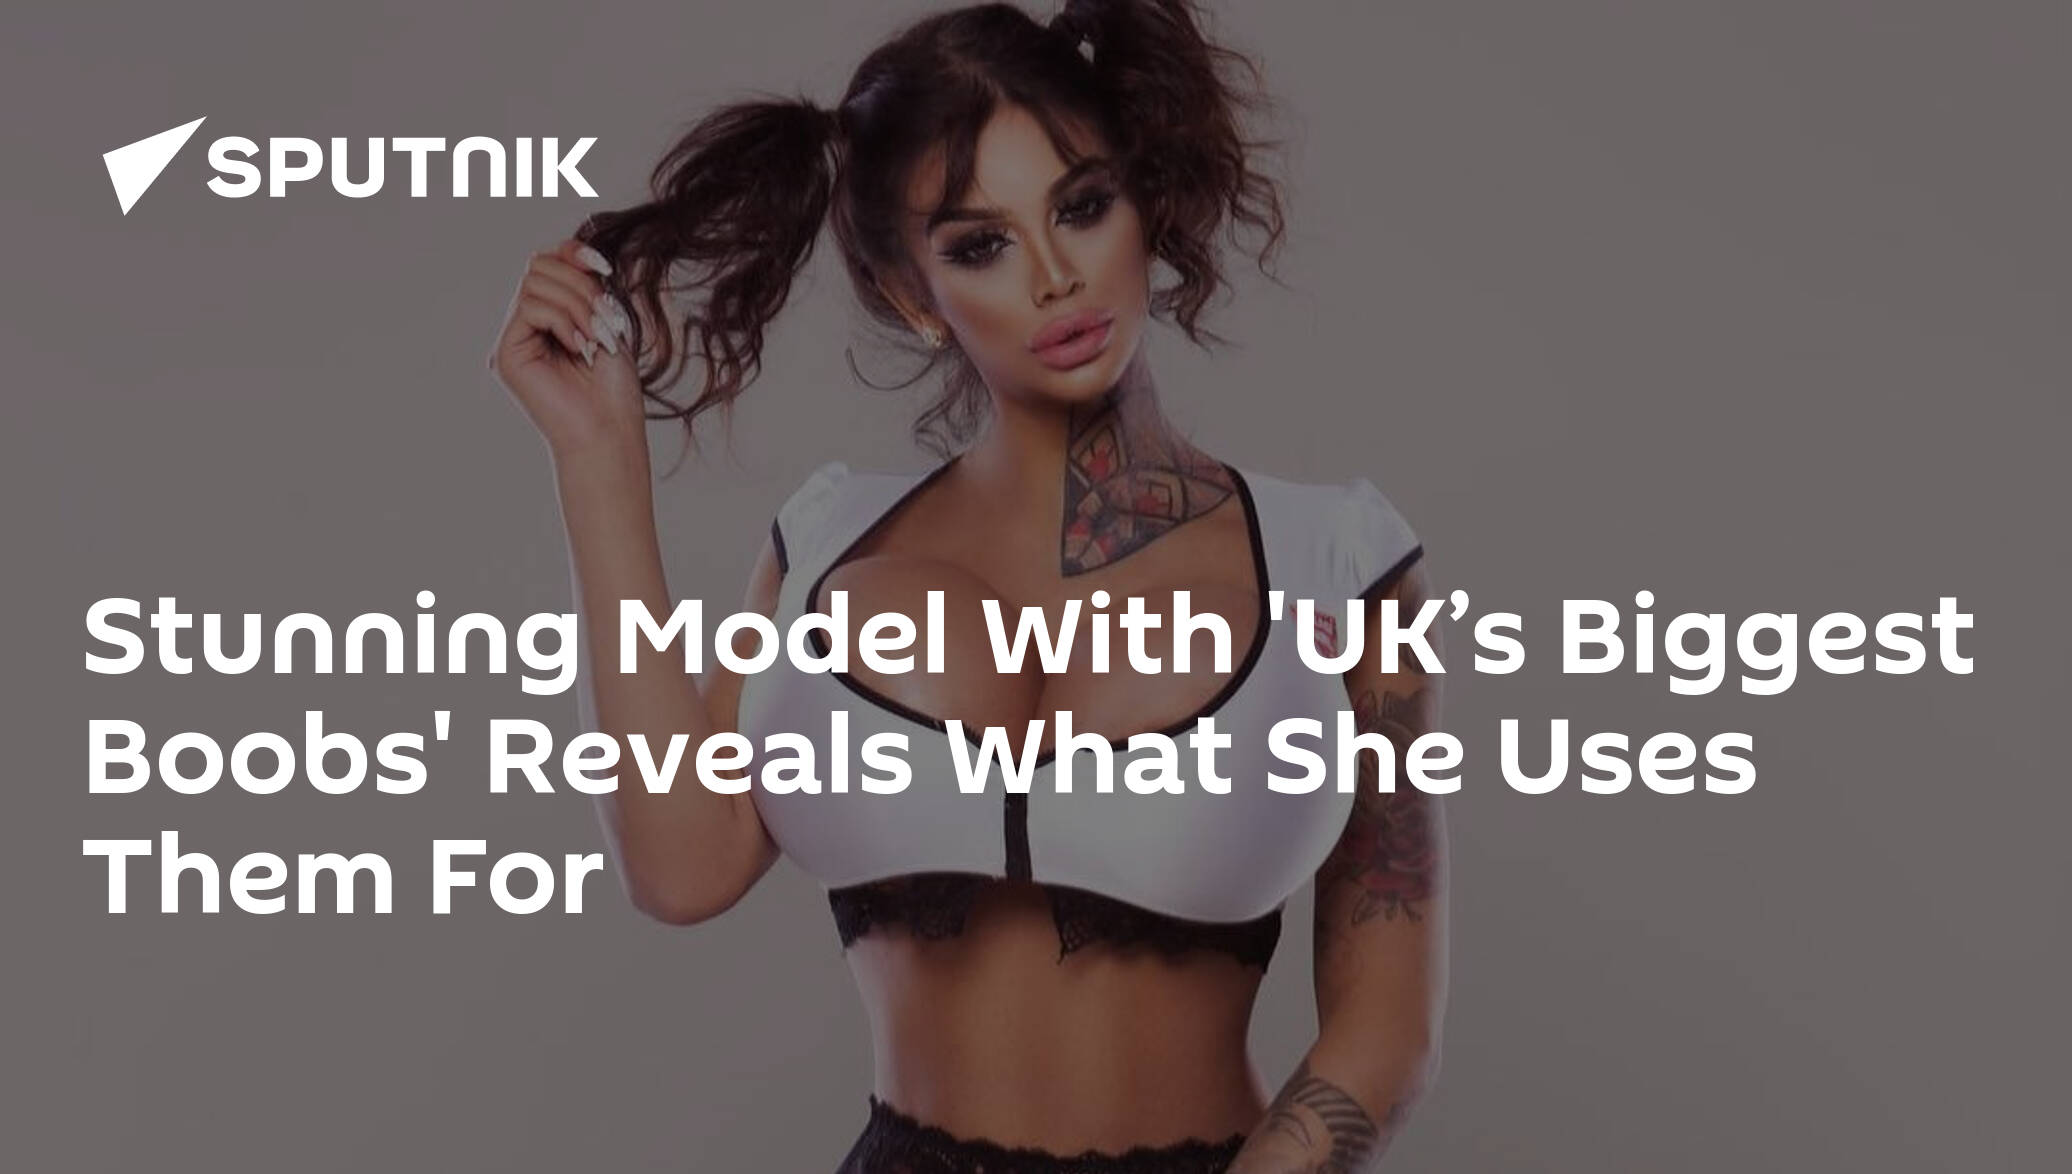 Model spends £60,000 to get 'UK's biggest boobs' - but doctors